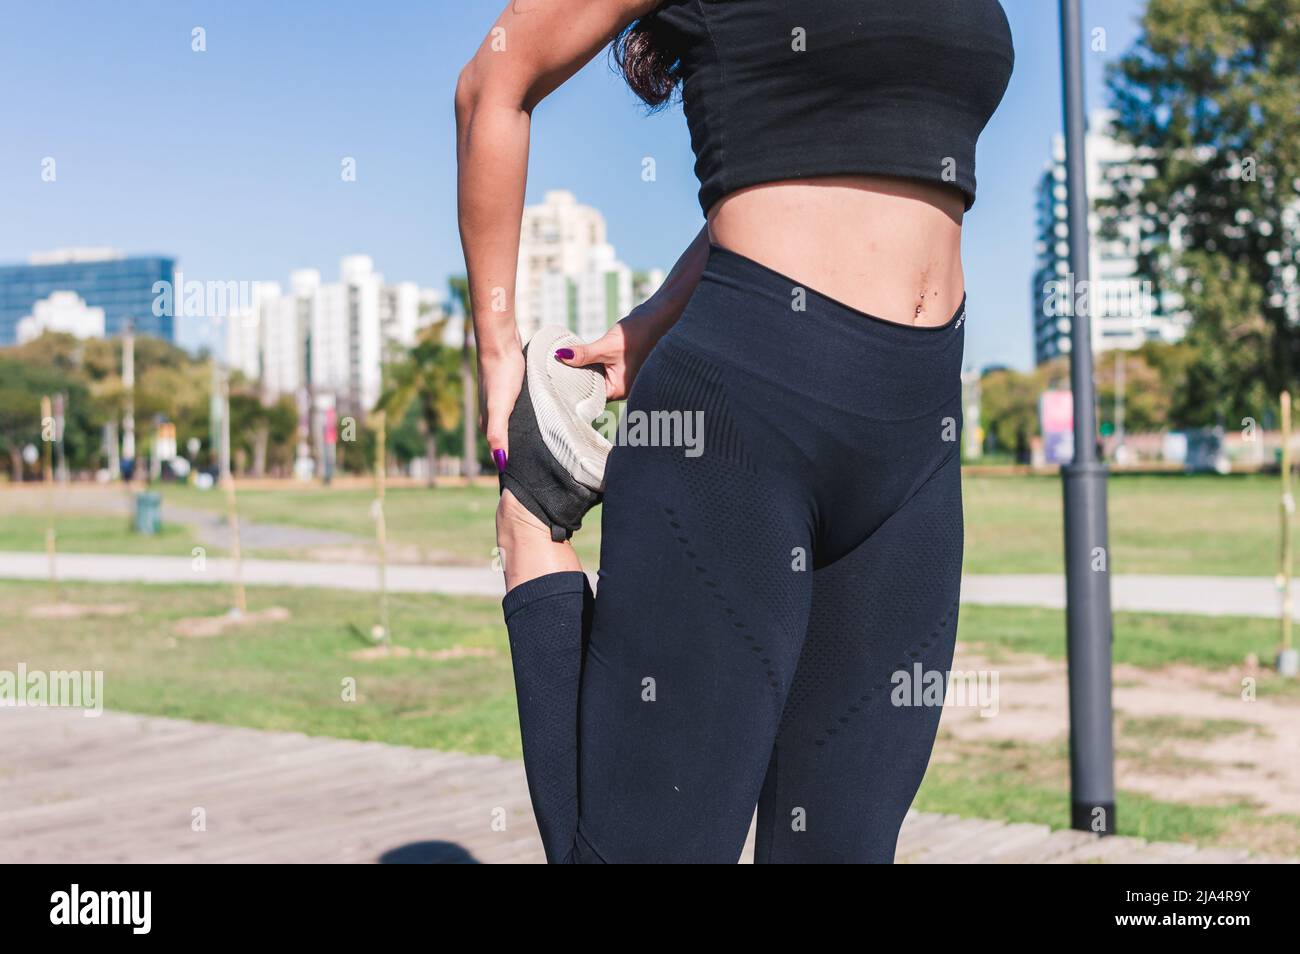 Giovane donna sportiva latinocaucasica irriconoscibile, con abbigliamento sportivo nero, muscoli esterni delle gambe stretching, routine sportiva mattutina. Foto Stock